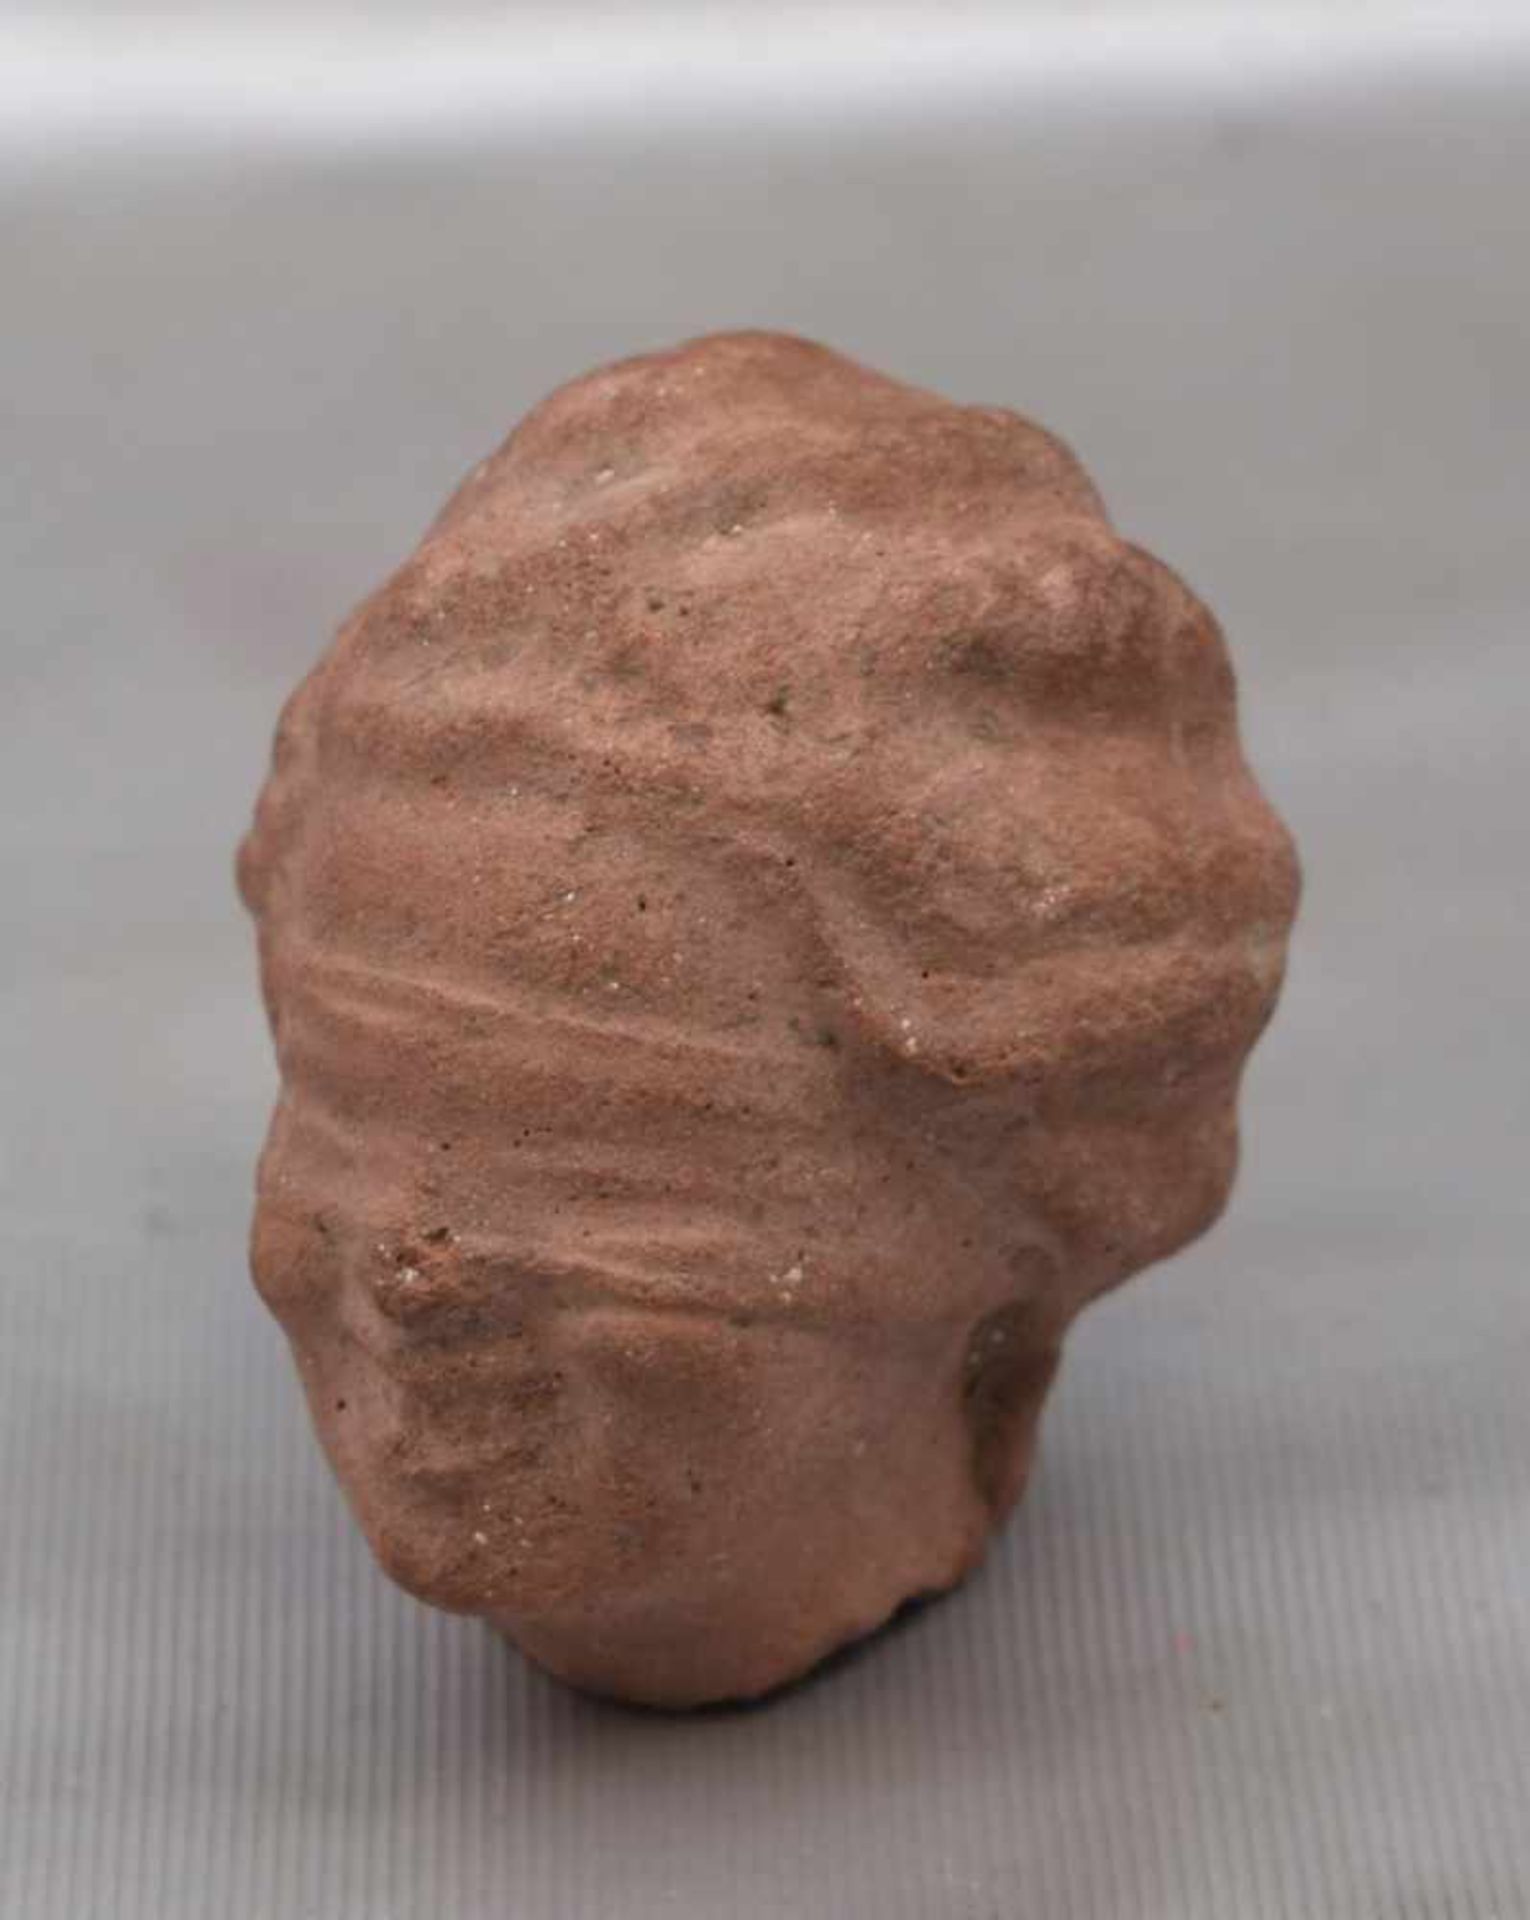 Kopf der Justiciaroter Sandstein, mit verbundenen Augen, H 7 cm